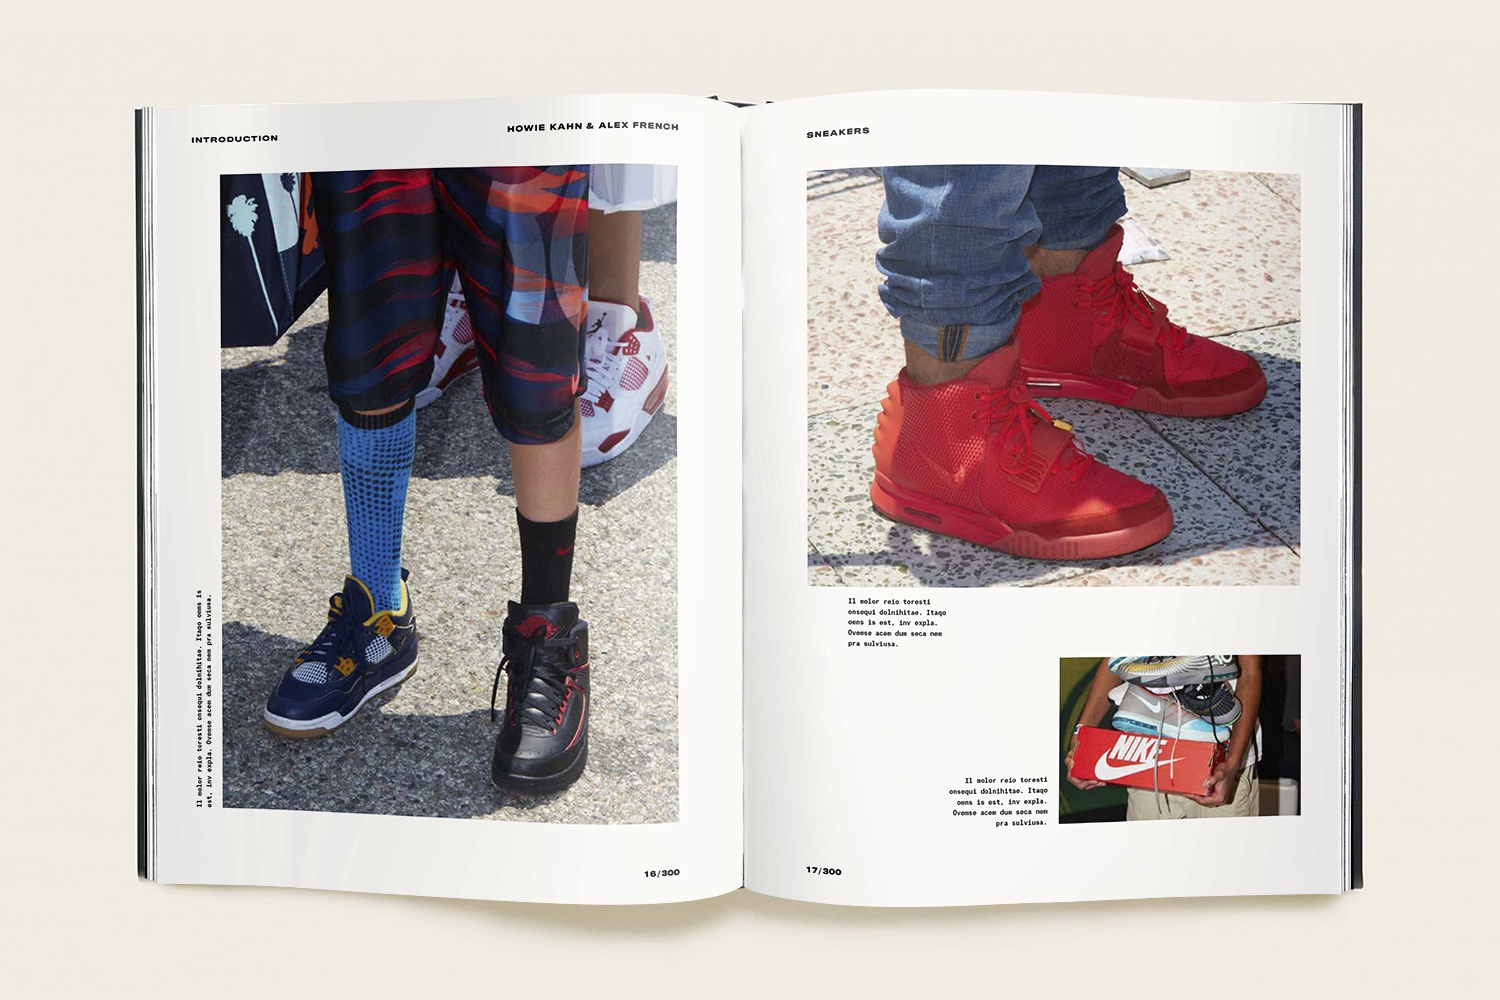 10월에 출판되는 또 하나의 책 ‘스니커즈(Sneakers)’(Sneakers : The Definitive Book on Kicks Is Coming in October) 2